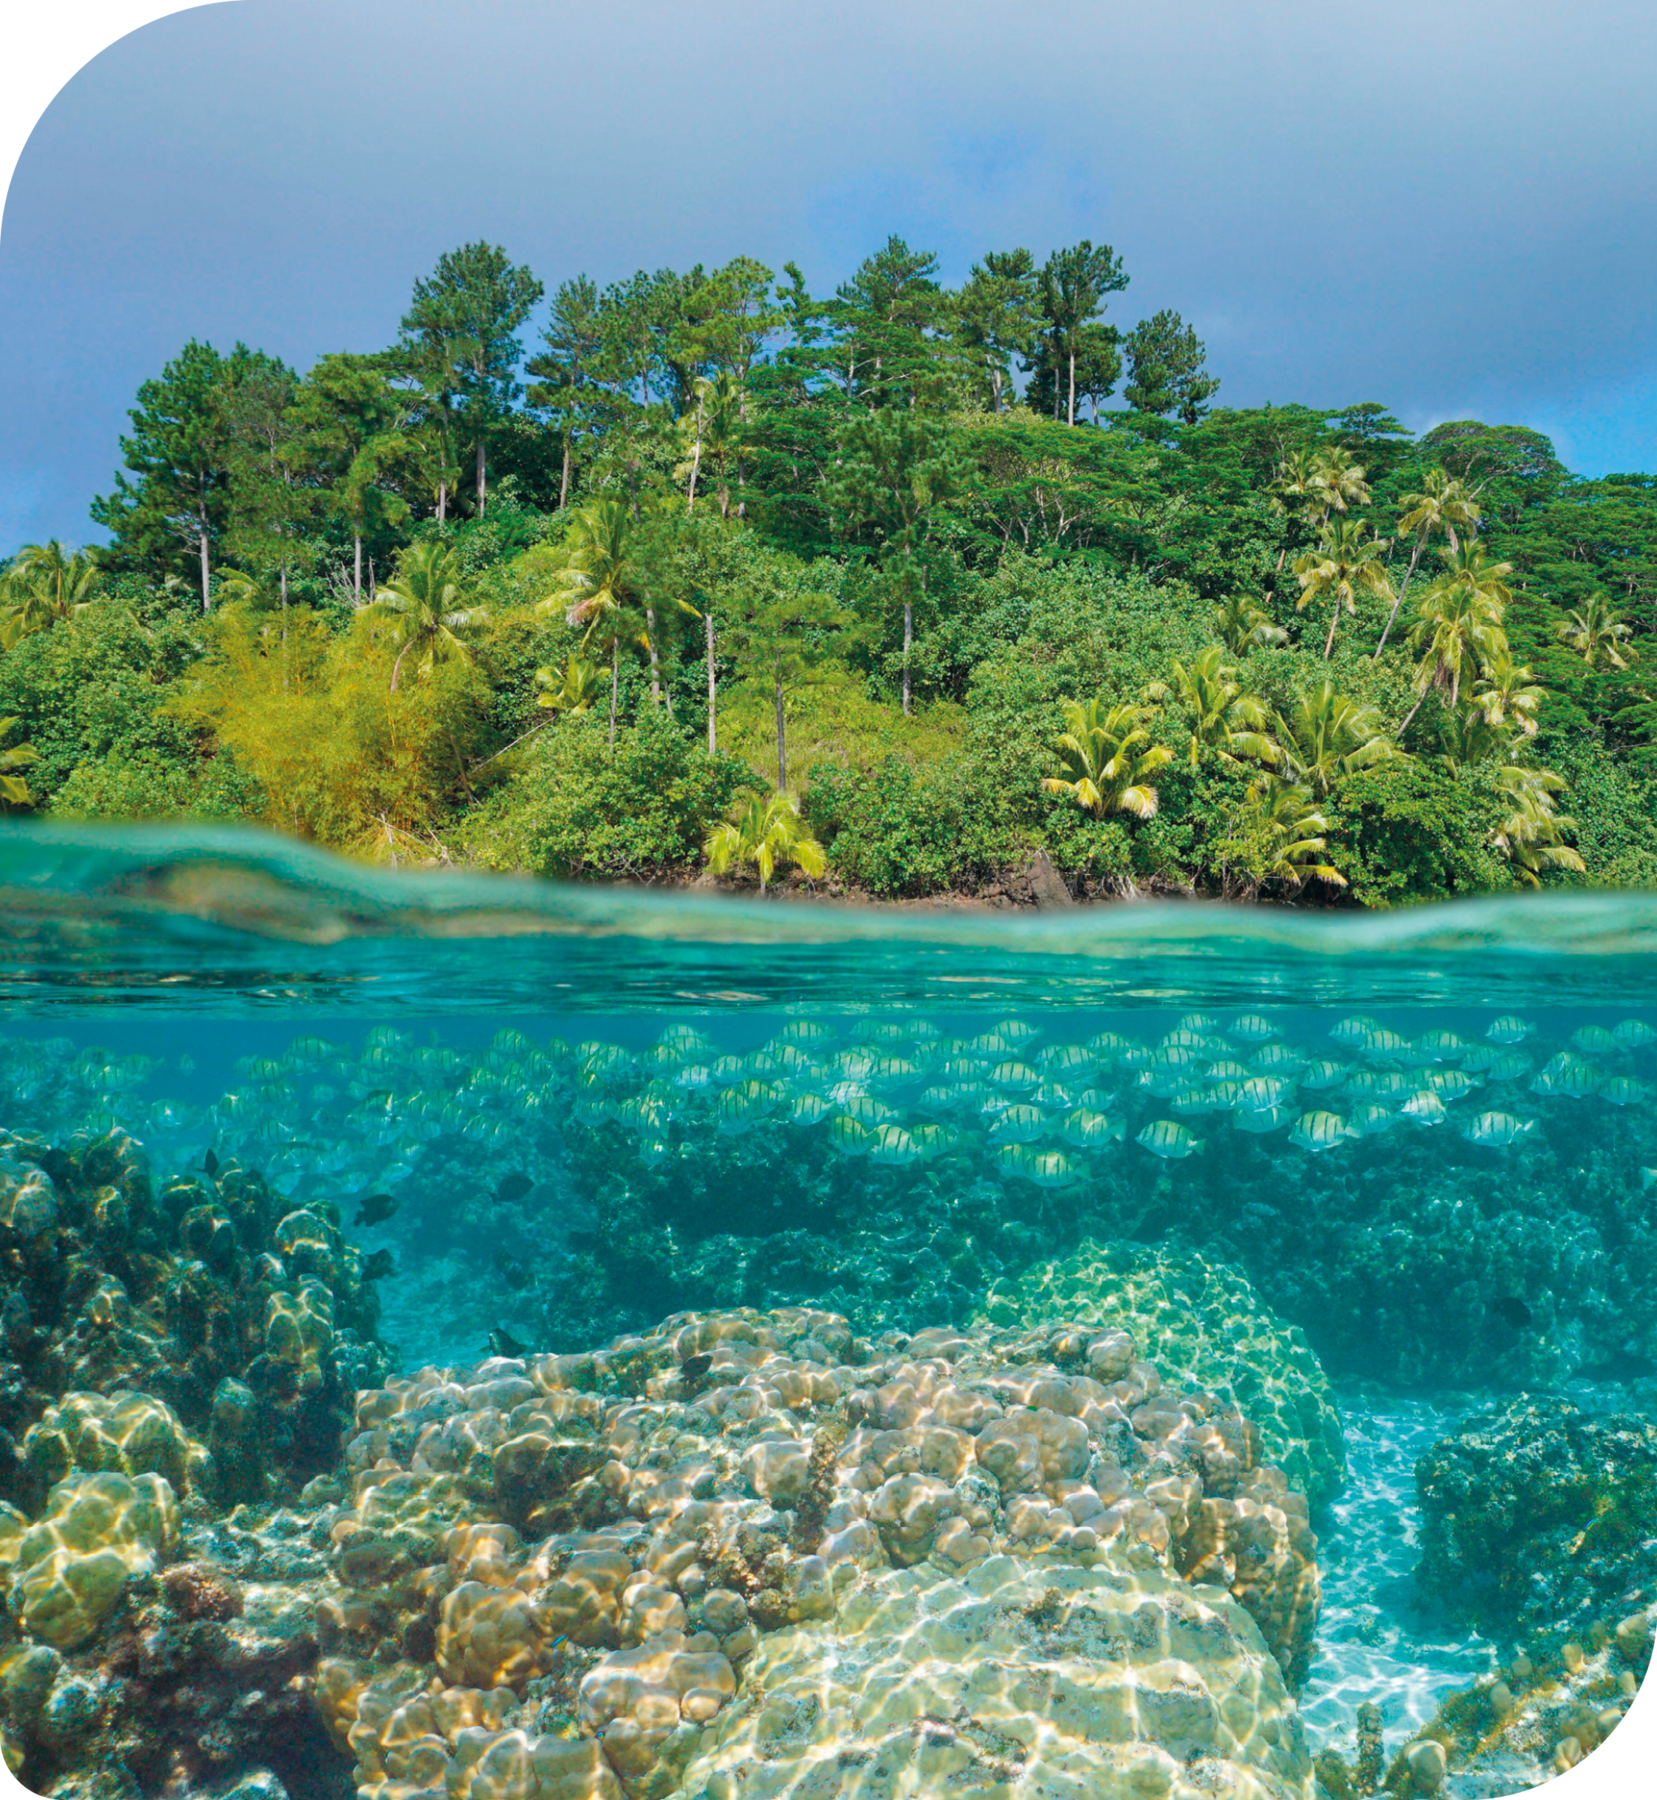 Fotografia. No primeiro plano, o mar com corais submersos e peixes. Ao fundo, superfície com uma floresta repleta de árvores e palmeiras.